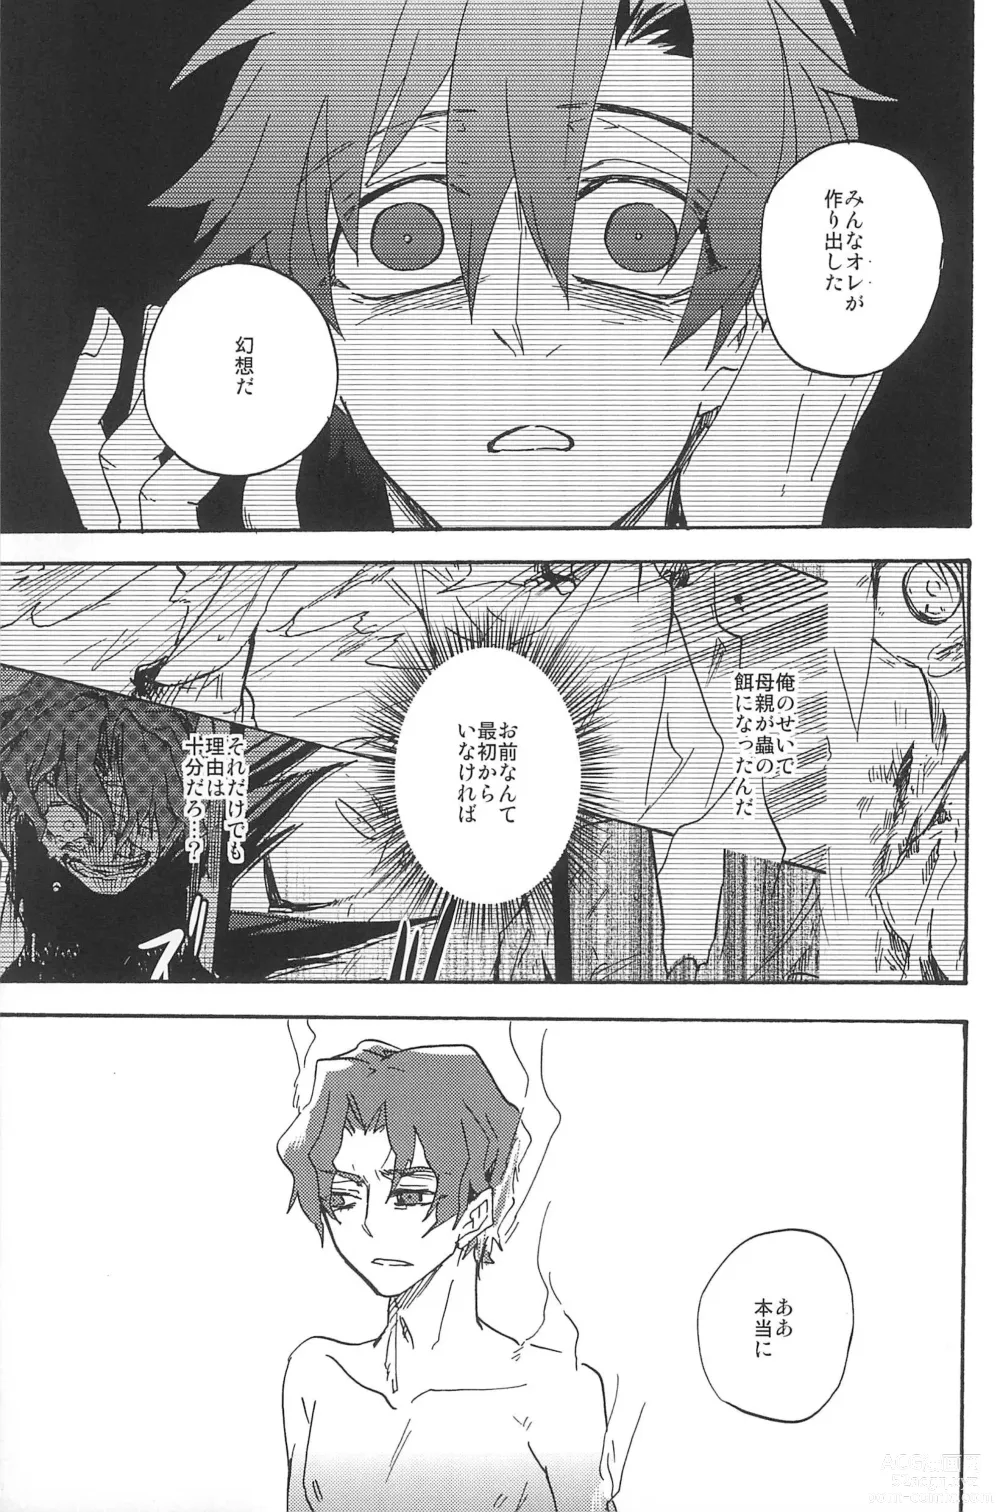 Page 315 of doujinshi RE:BERSERK